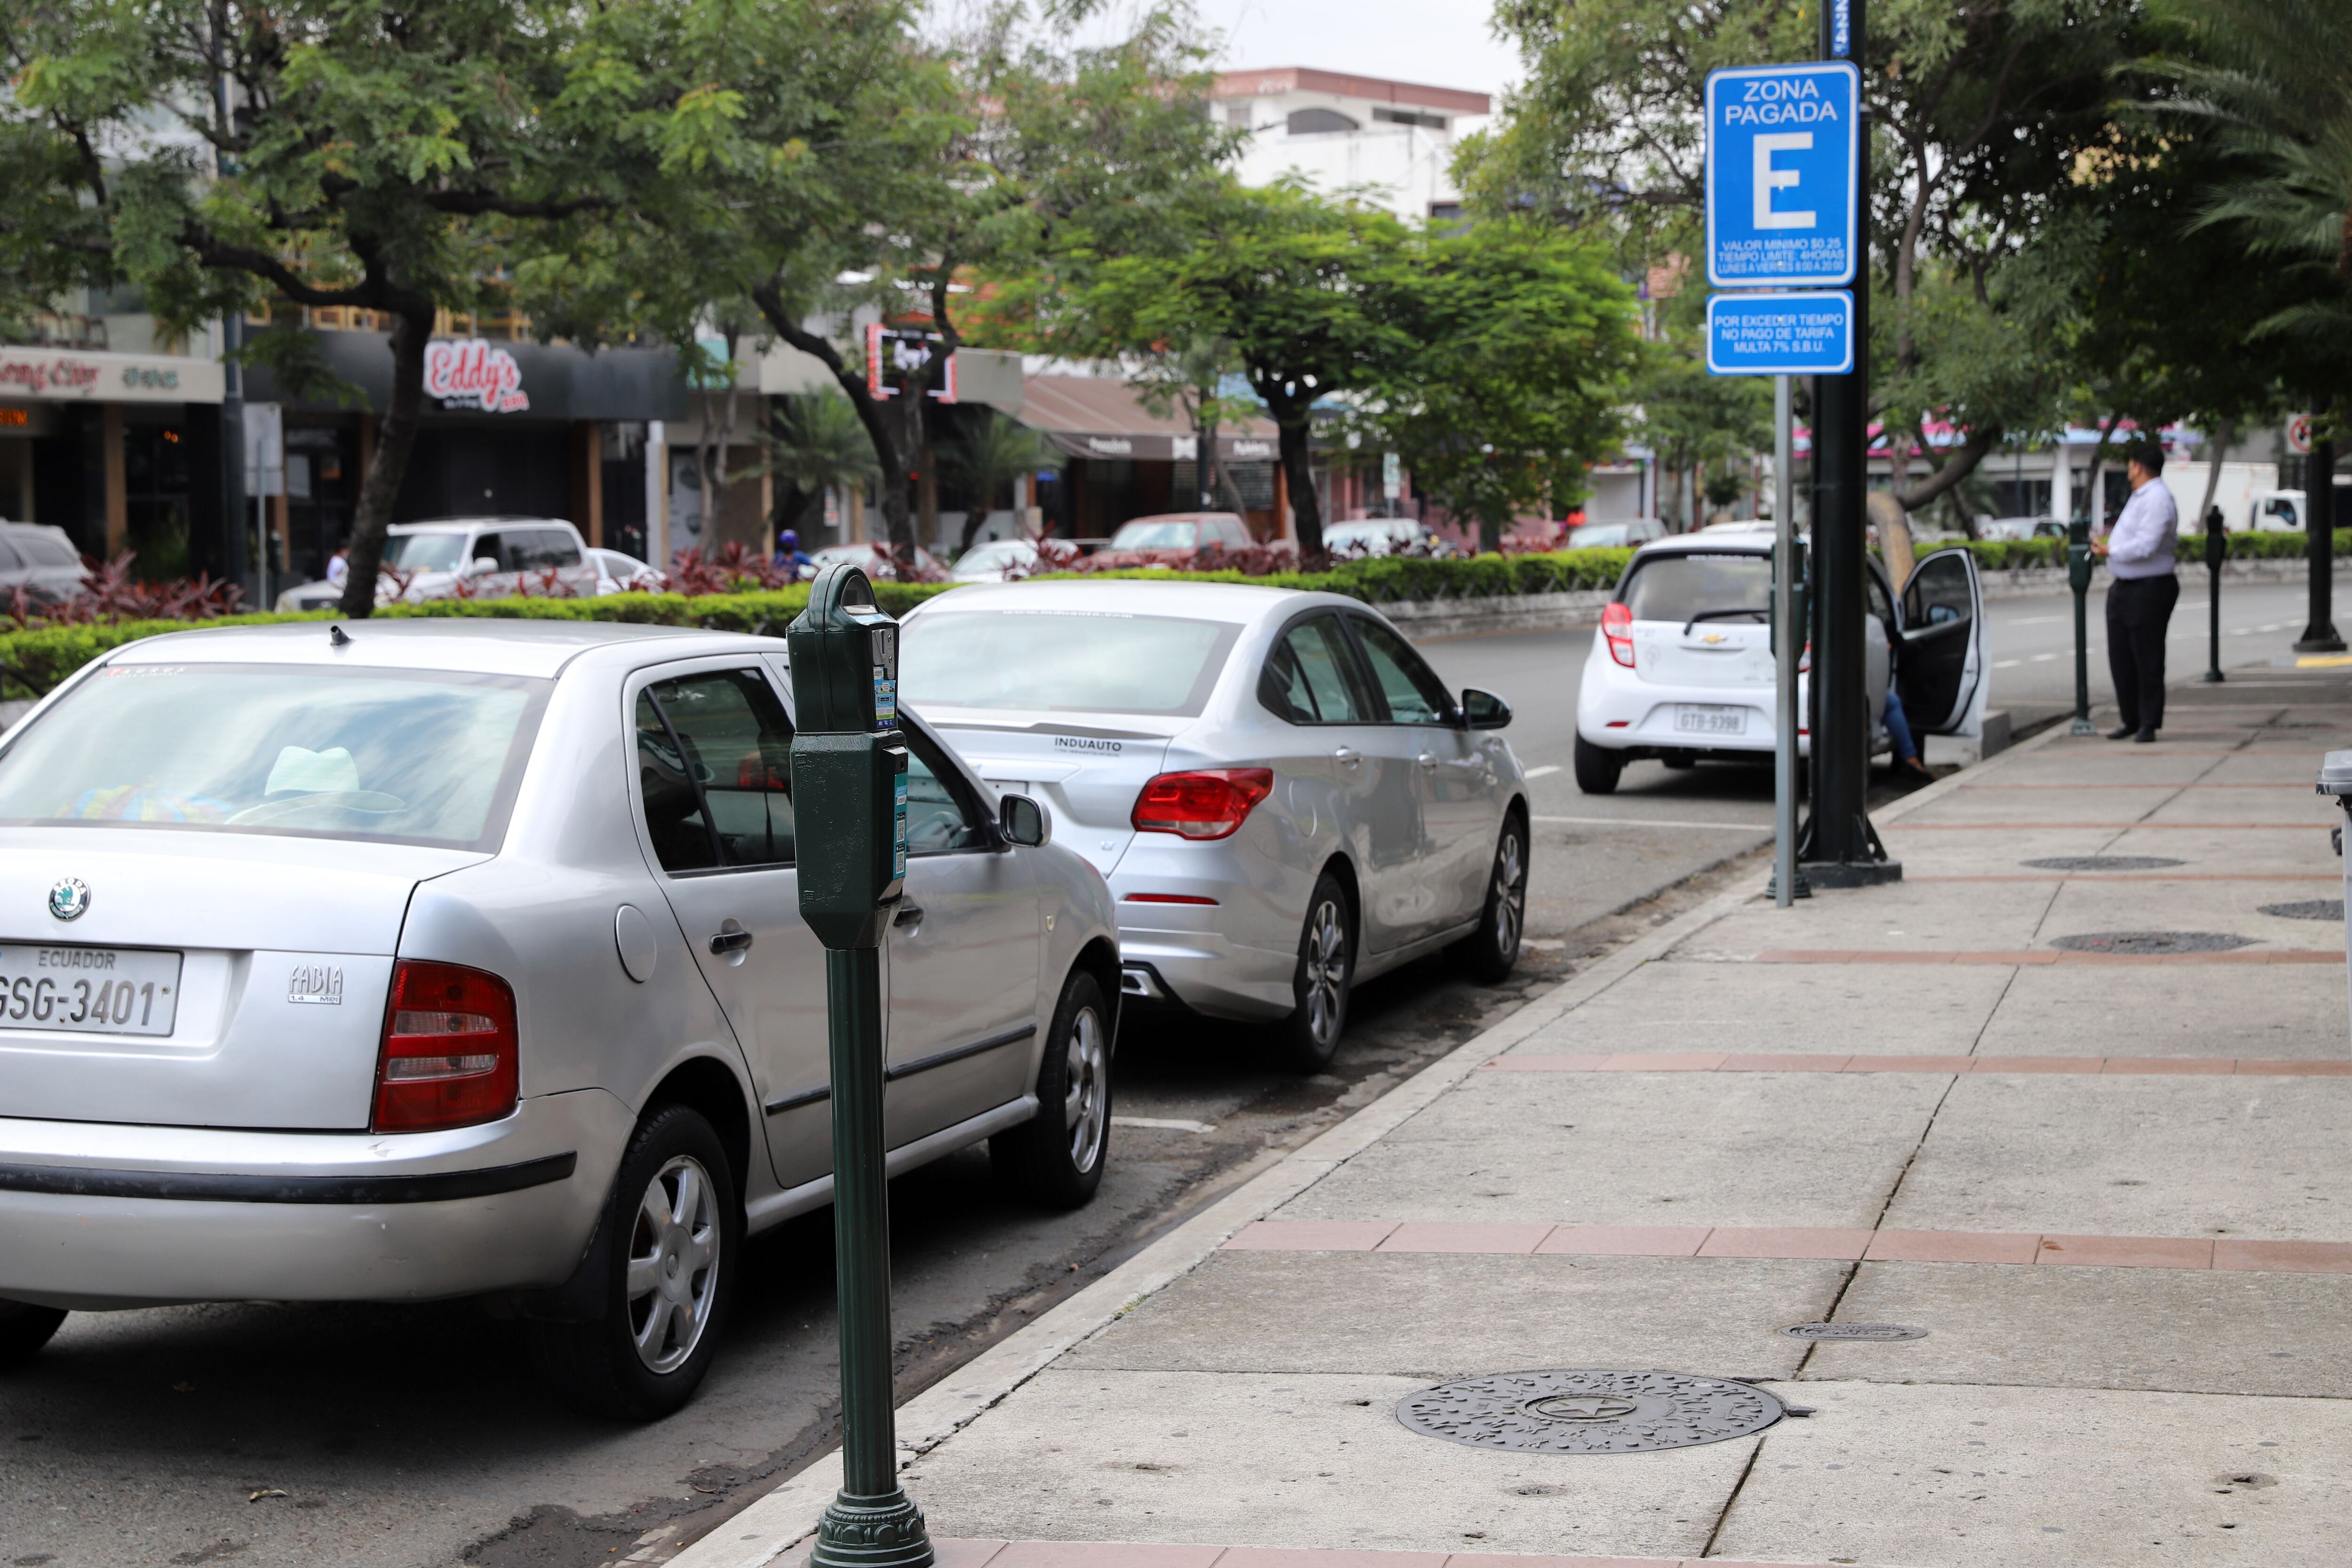 Urdesa es una de las cinco zonas de Guayaquil donde están instalados 923 parquímetros para el control de 1.609 espacios de estacionamiento pagado. Foto Carlos Barros / El Universo.